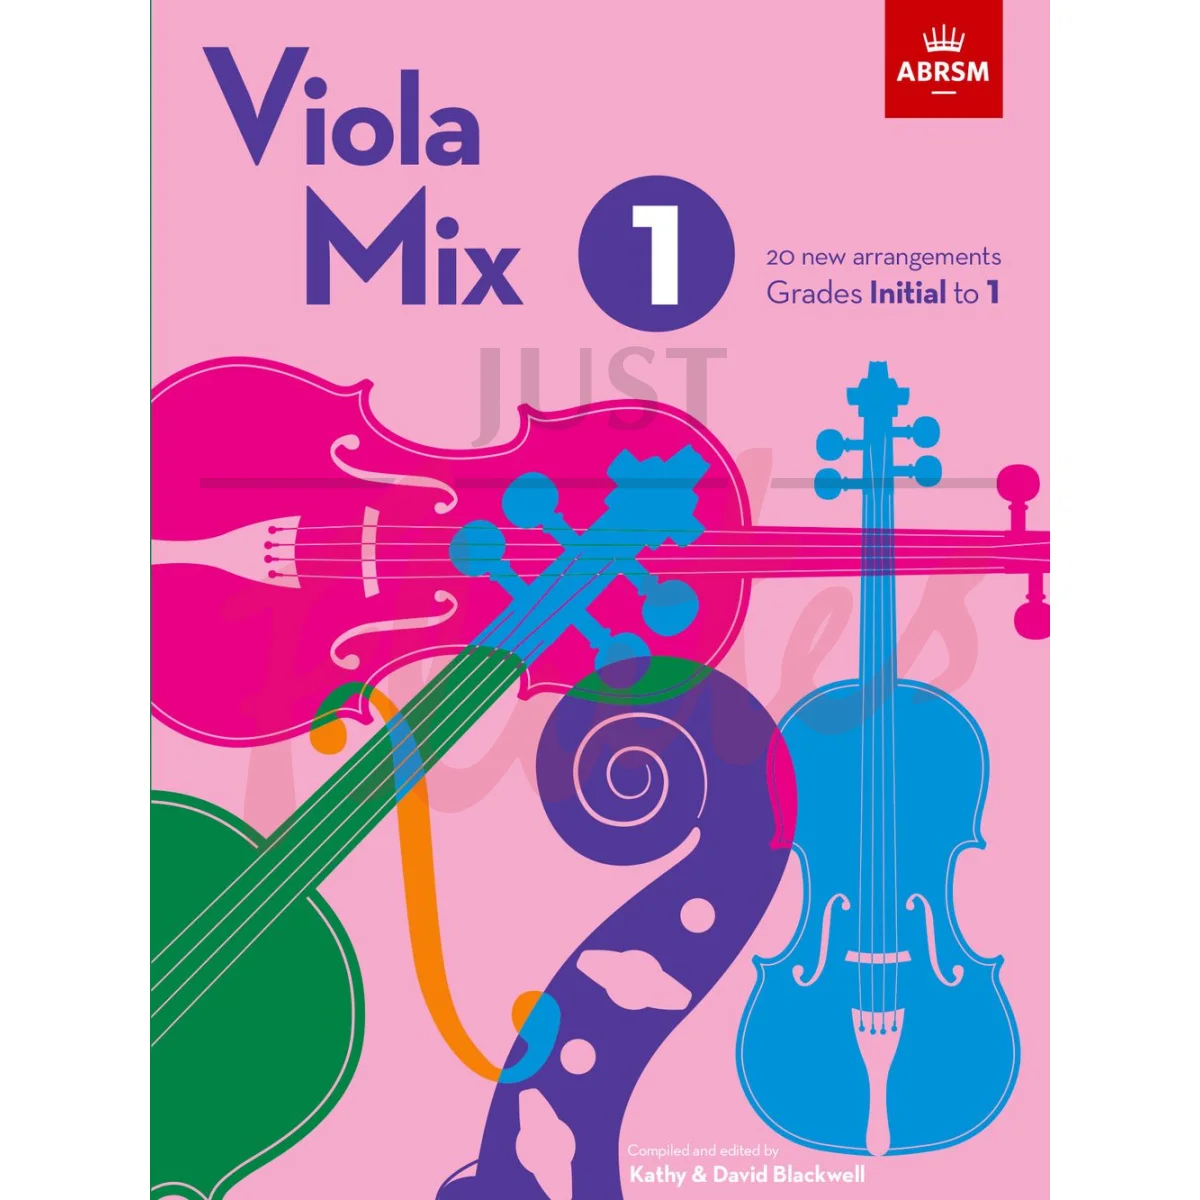 Viola Mix 1